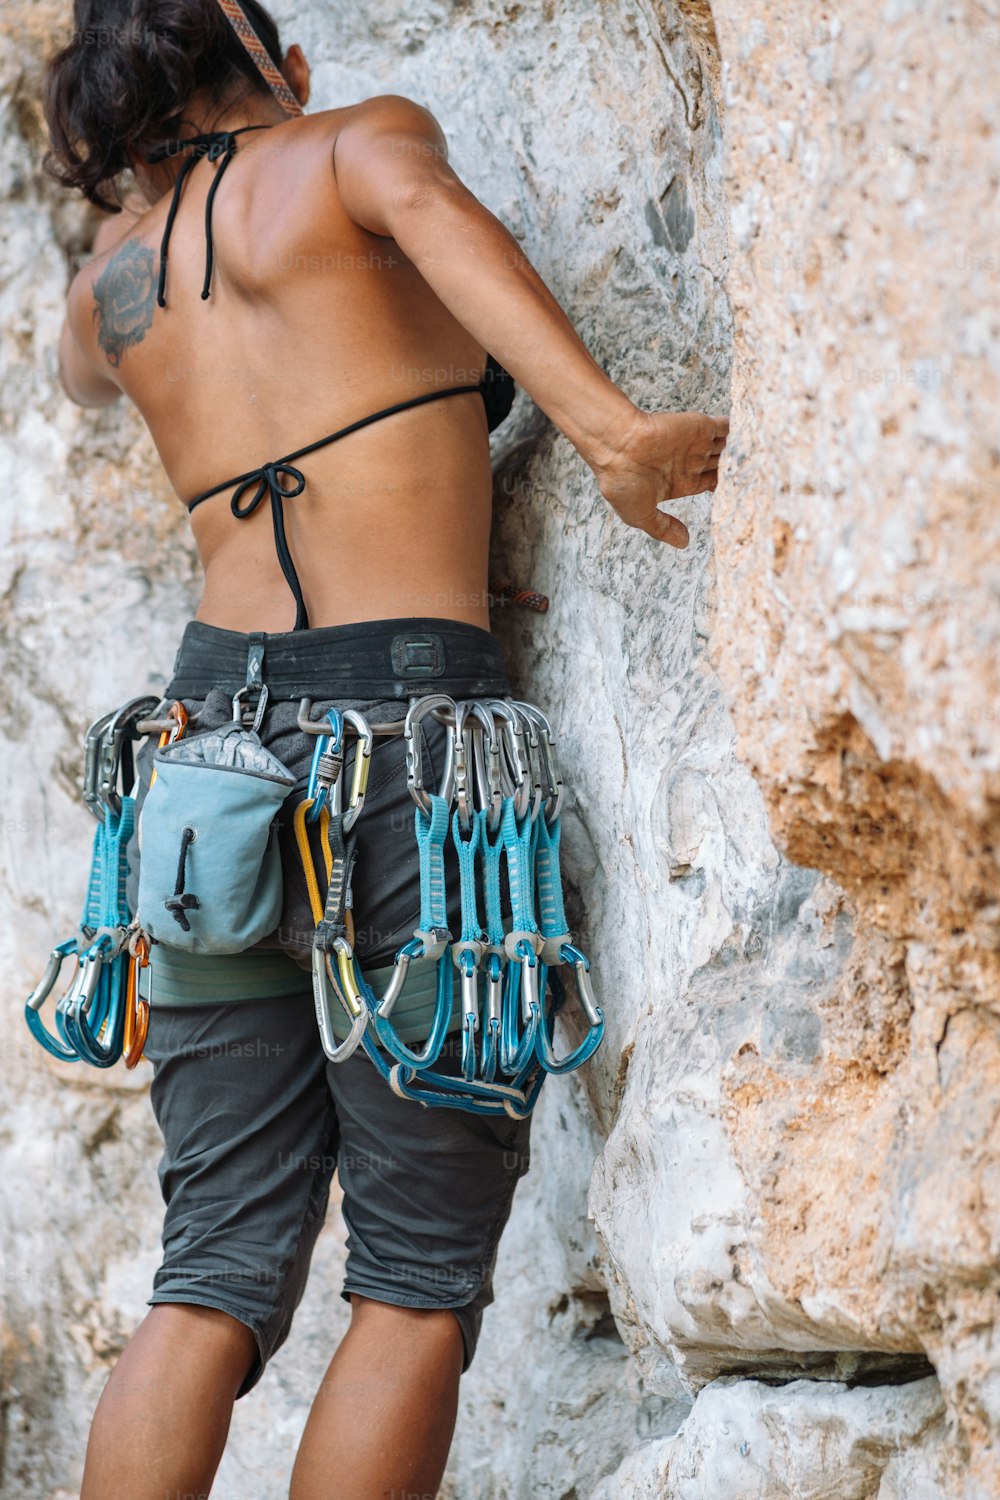 岩の側面を登る女性